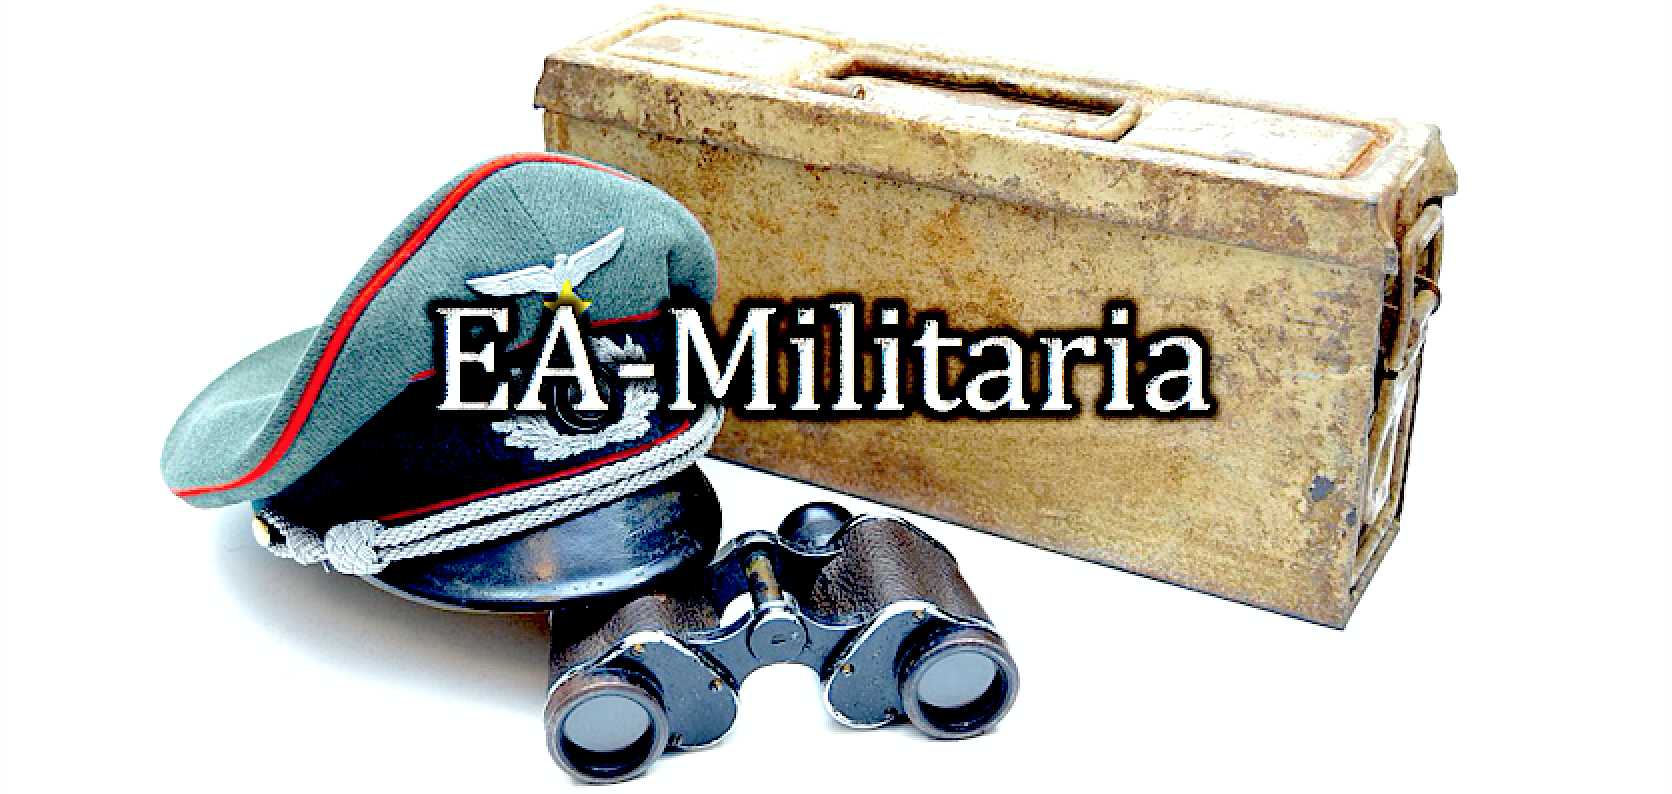 www.ea-militaria.com